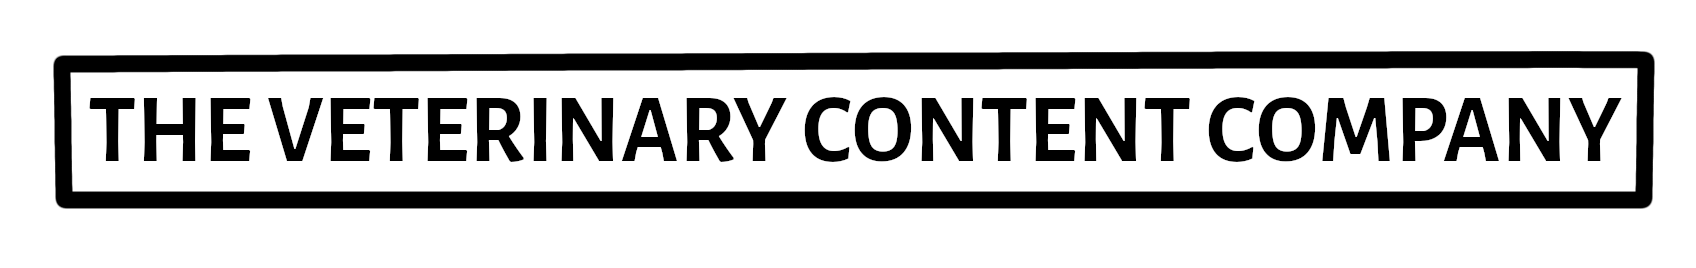 The Veterinary Content Company Logo